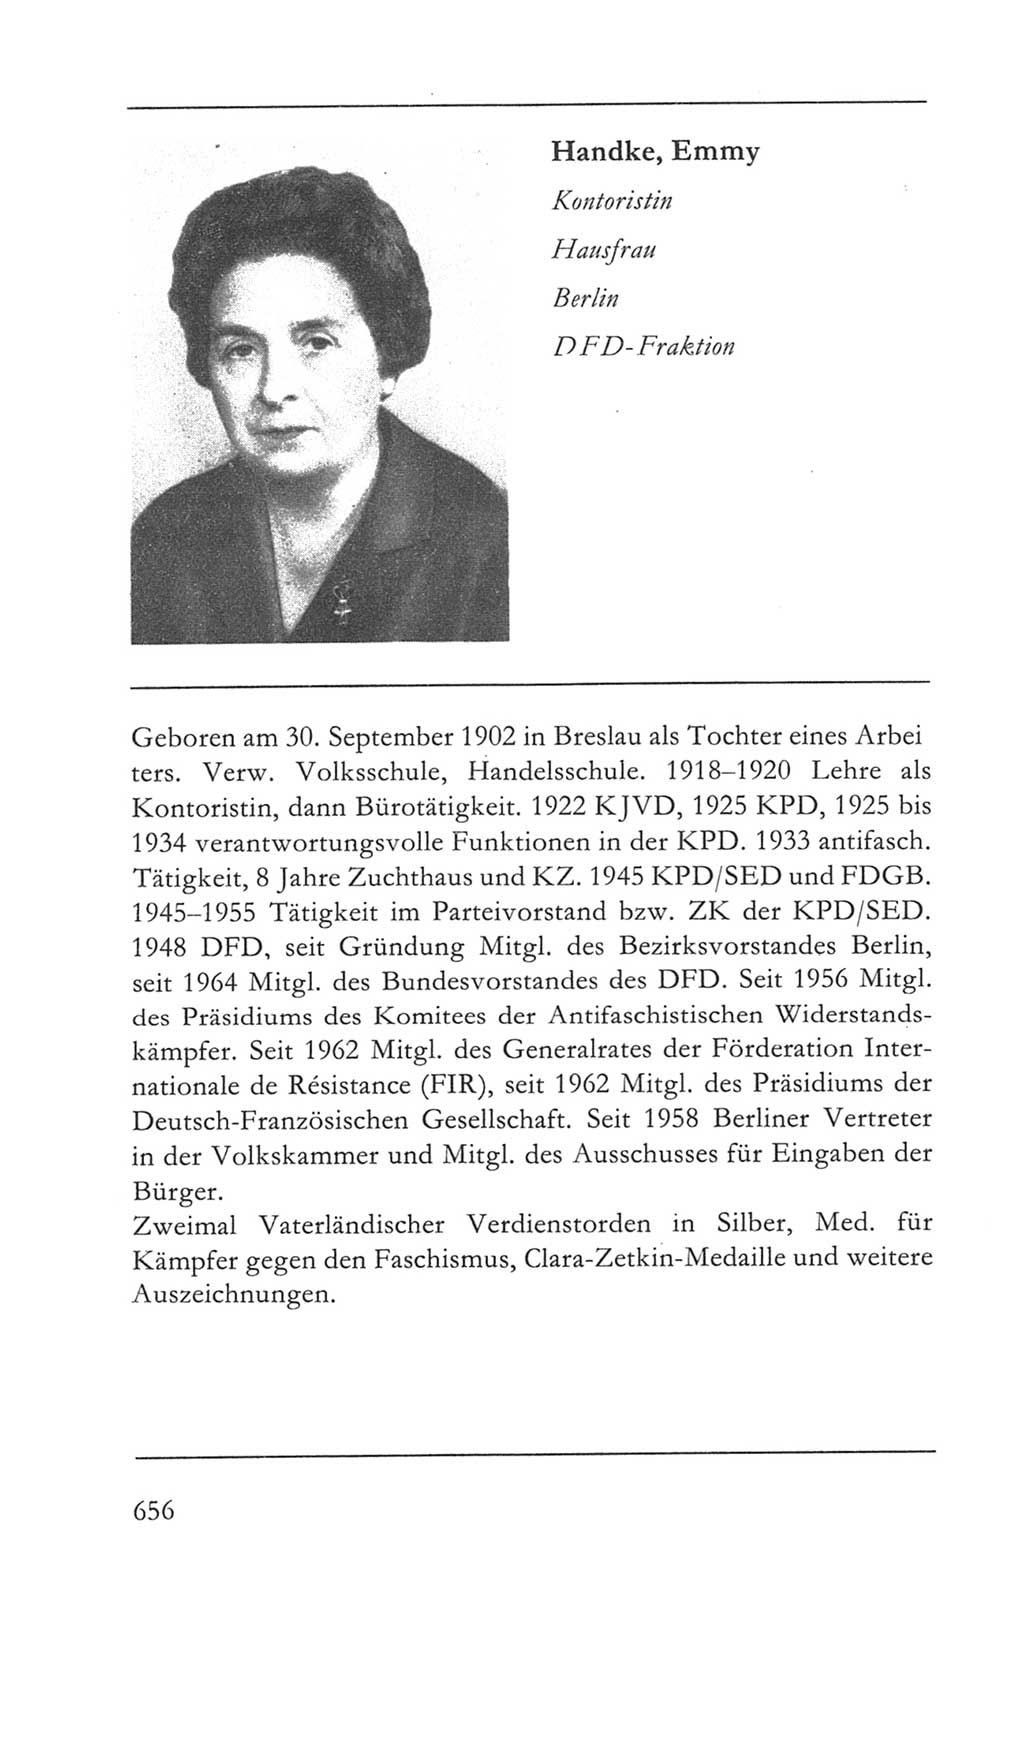 Volkskammer (VK) der Deutschen Demokratischen Republik (DDR) 5. Wahlperiode 1967-1971, Seite 656 (VK. DDR 5. WP. 1967-1971, S. 656)